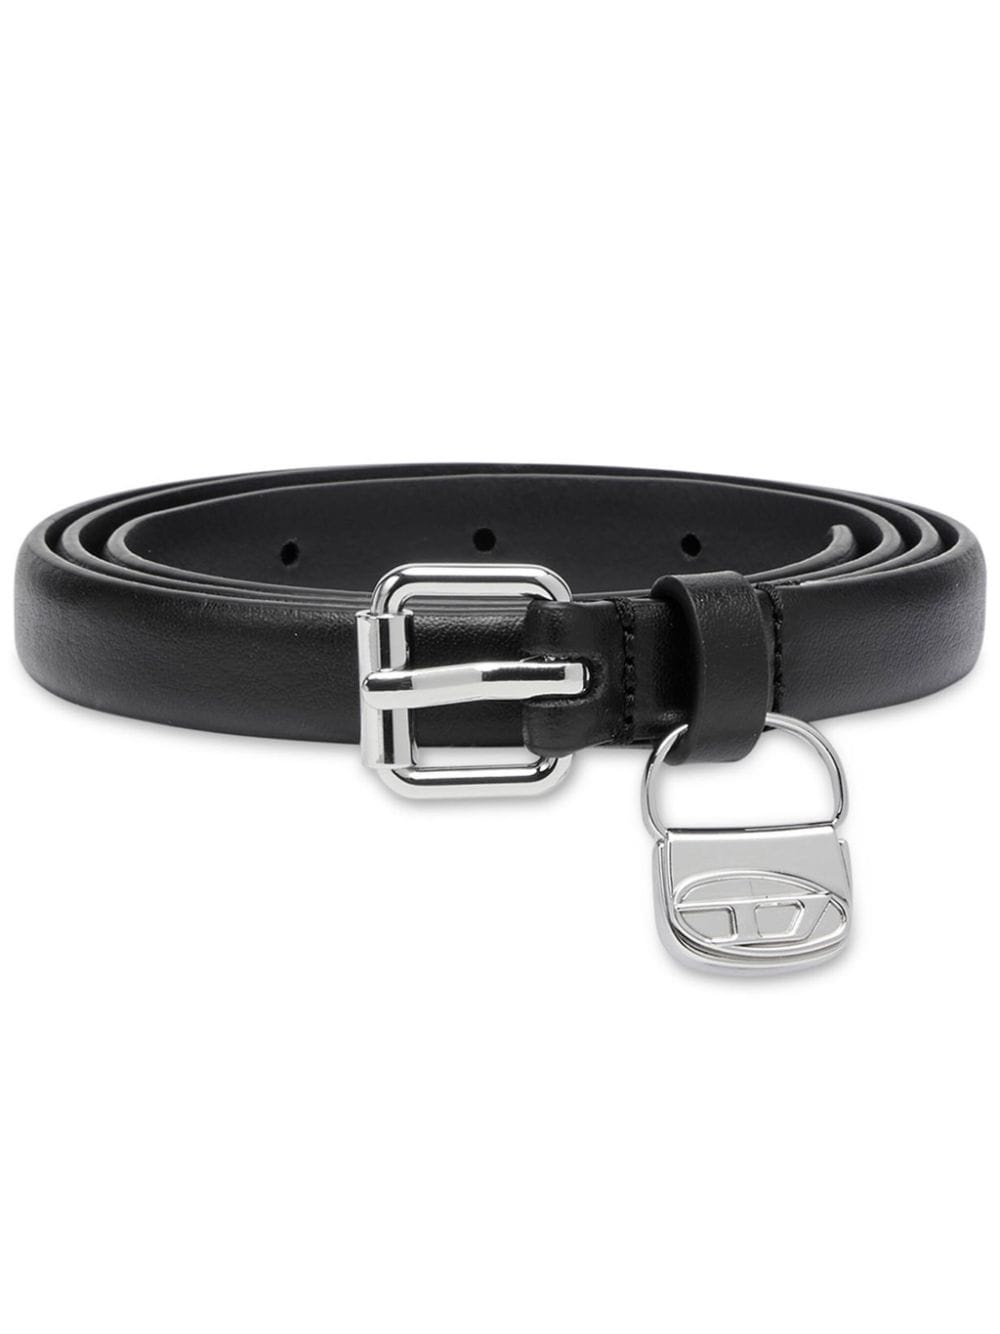 B-Charm leather belt - 1